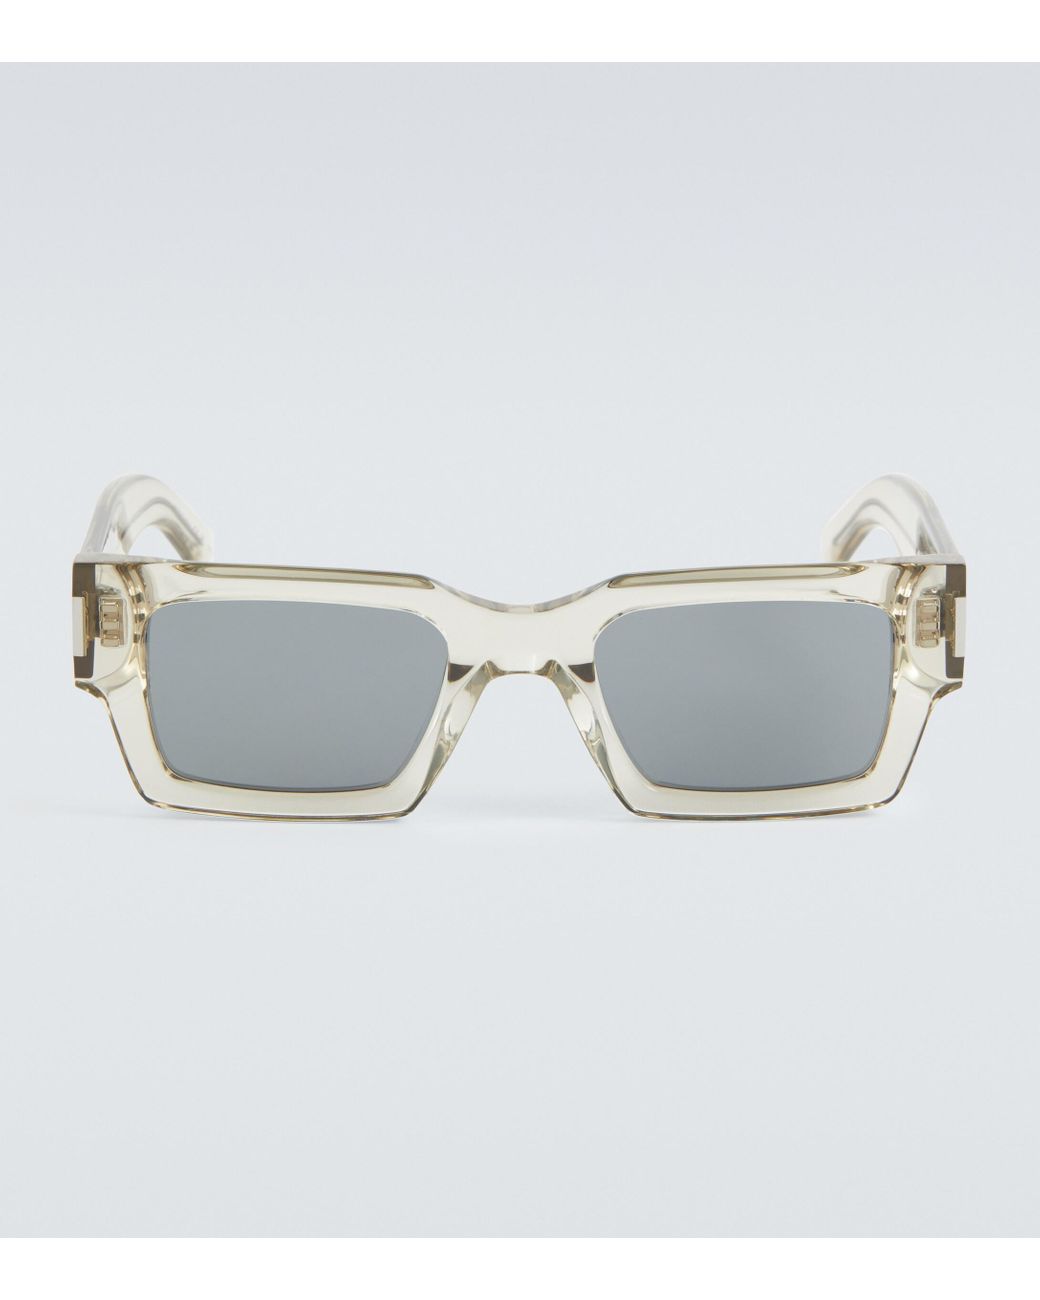 Mask E10 Silver Sunglasses  Silver sunglasses, Sunglasses